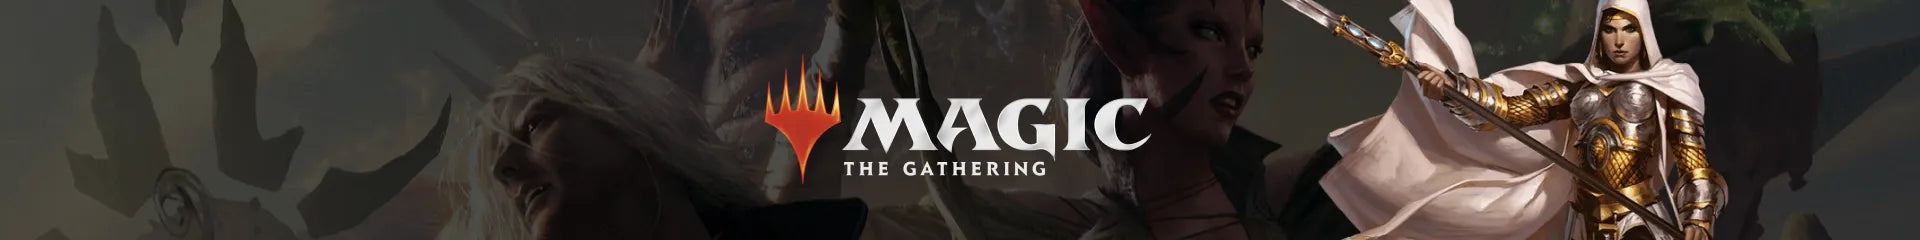 Magic The Gathering Gioco di Carte Collezionabili | Otakura.com